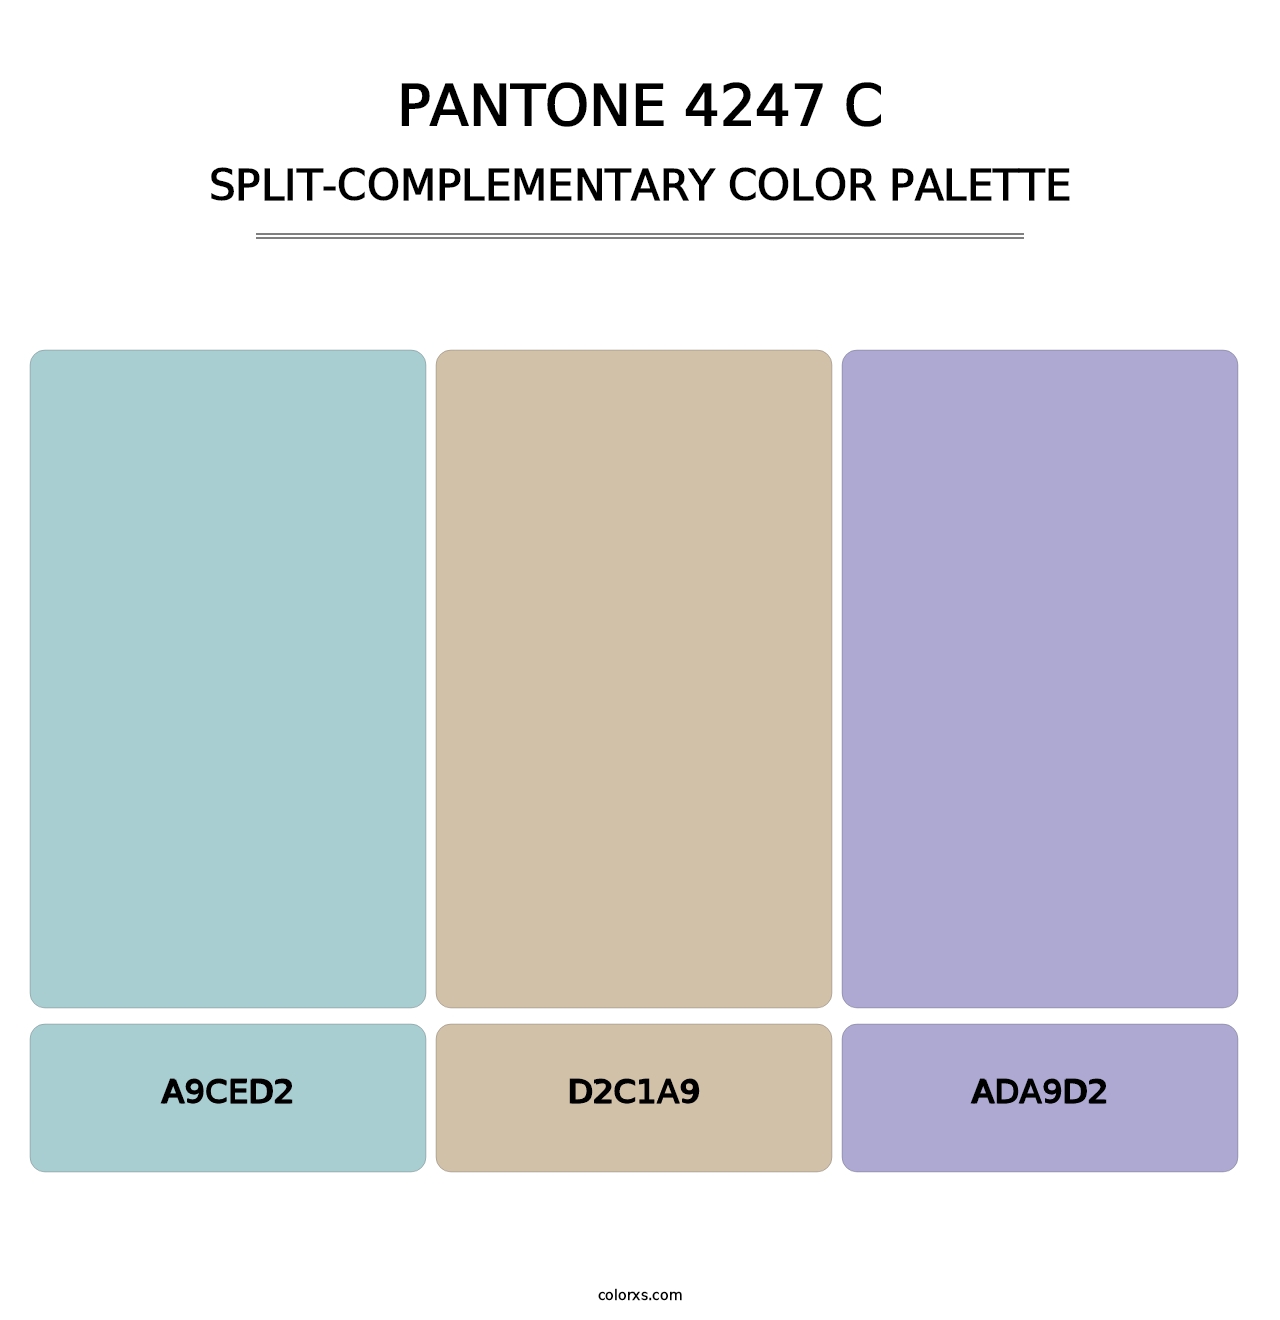 PANTONE 4247 C - Split-Complementary Color Palette